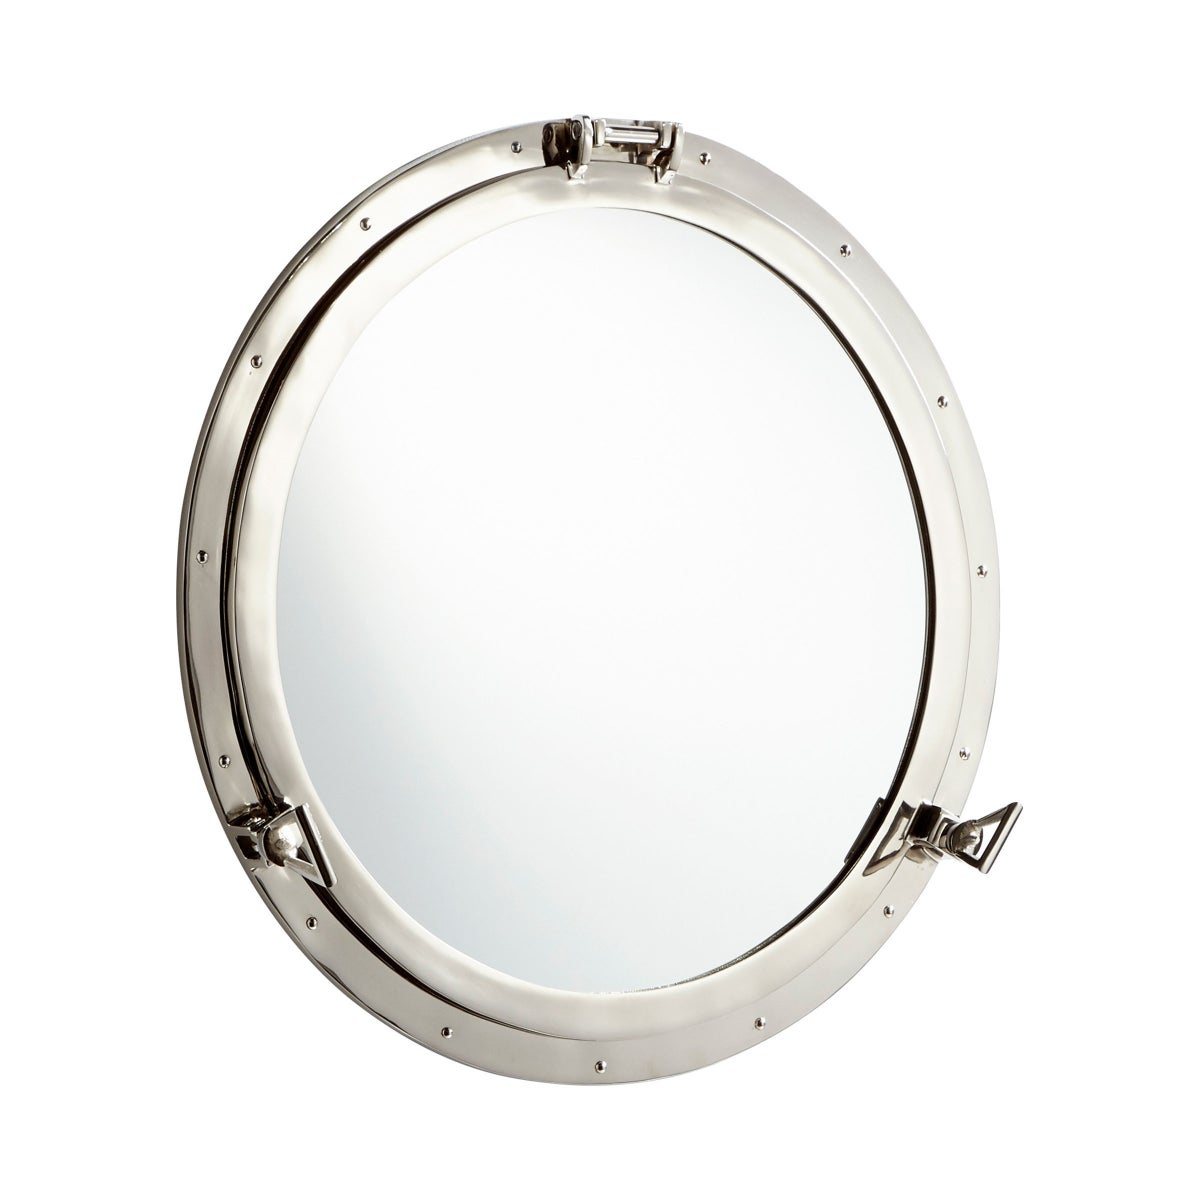 Seeworthy Mirror | Nickel - Large